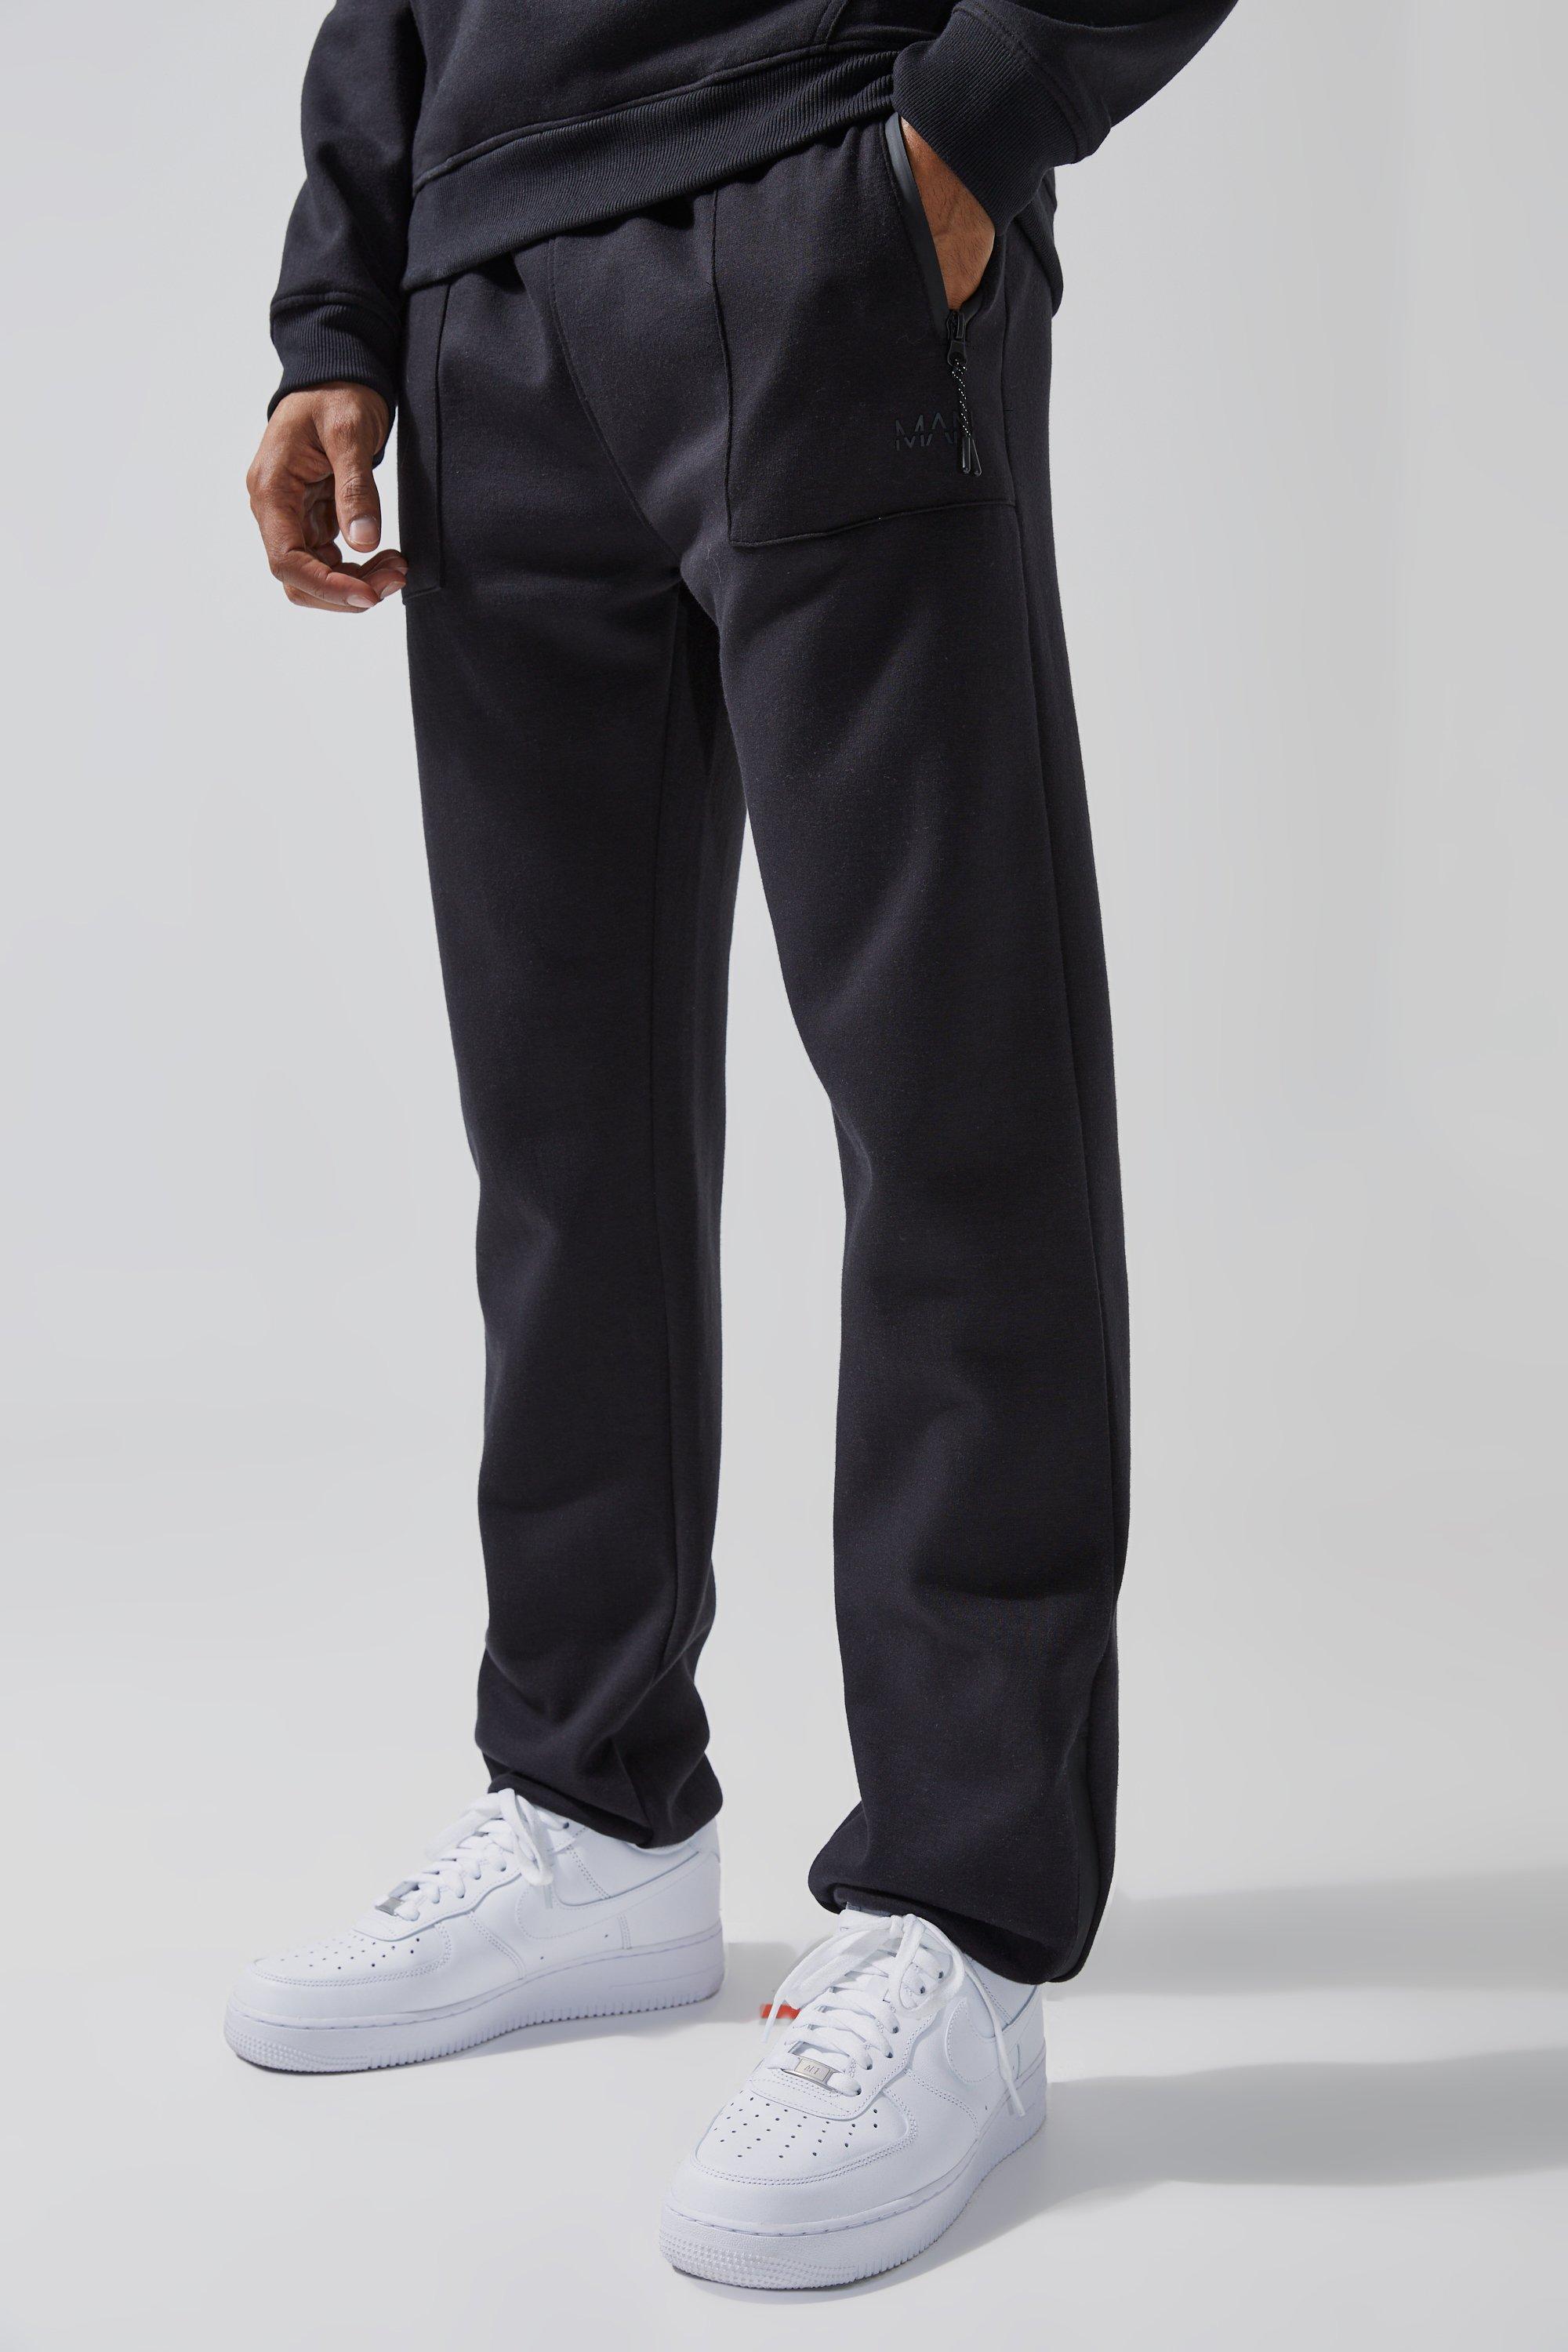 Image of Pantaloni tuta Man Active Tech con zip sul fondo, Nero